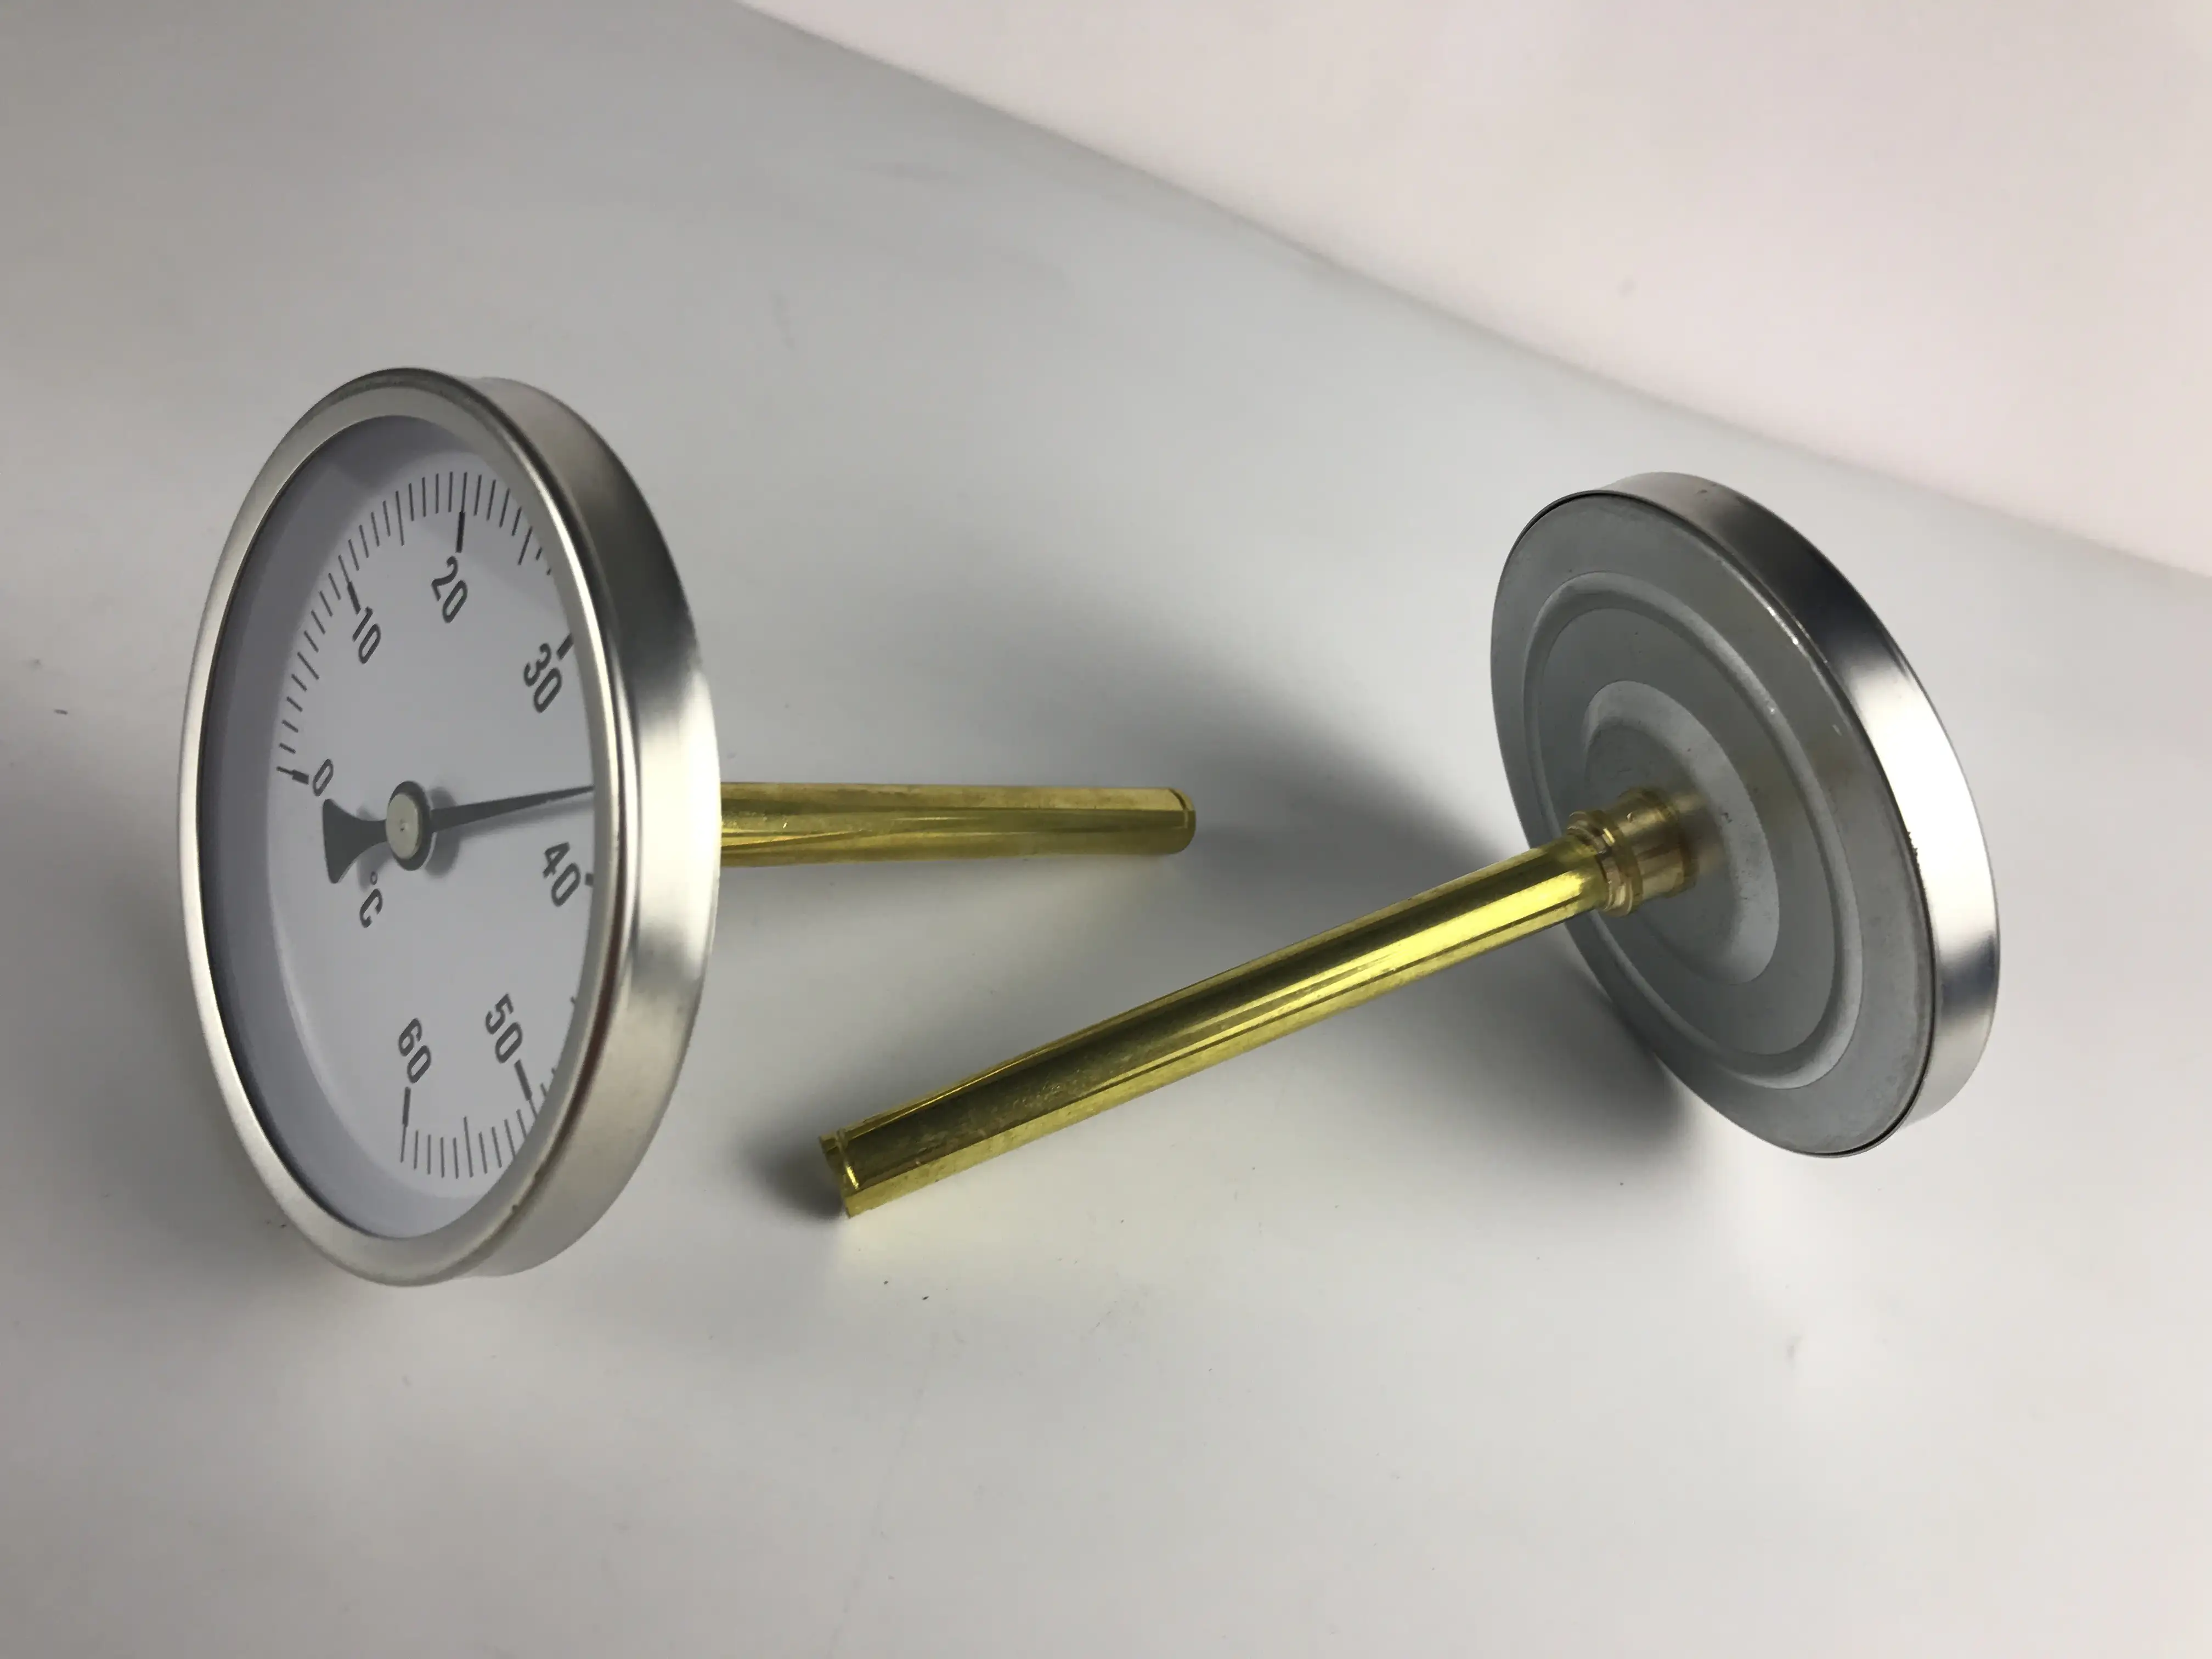 Hochwertiges Bimetall-Heißwasser thermometer Industrielle Temperatur regelung aus rostfreiem Stahl